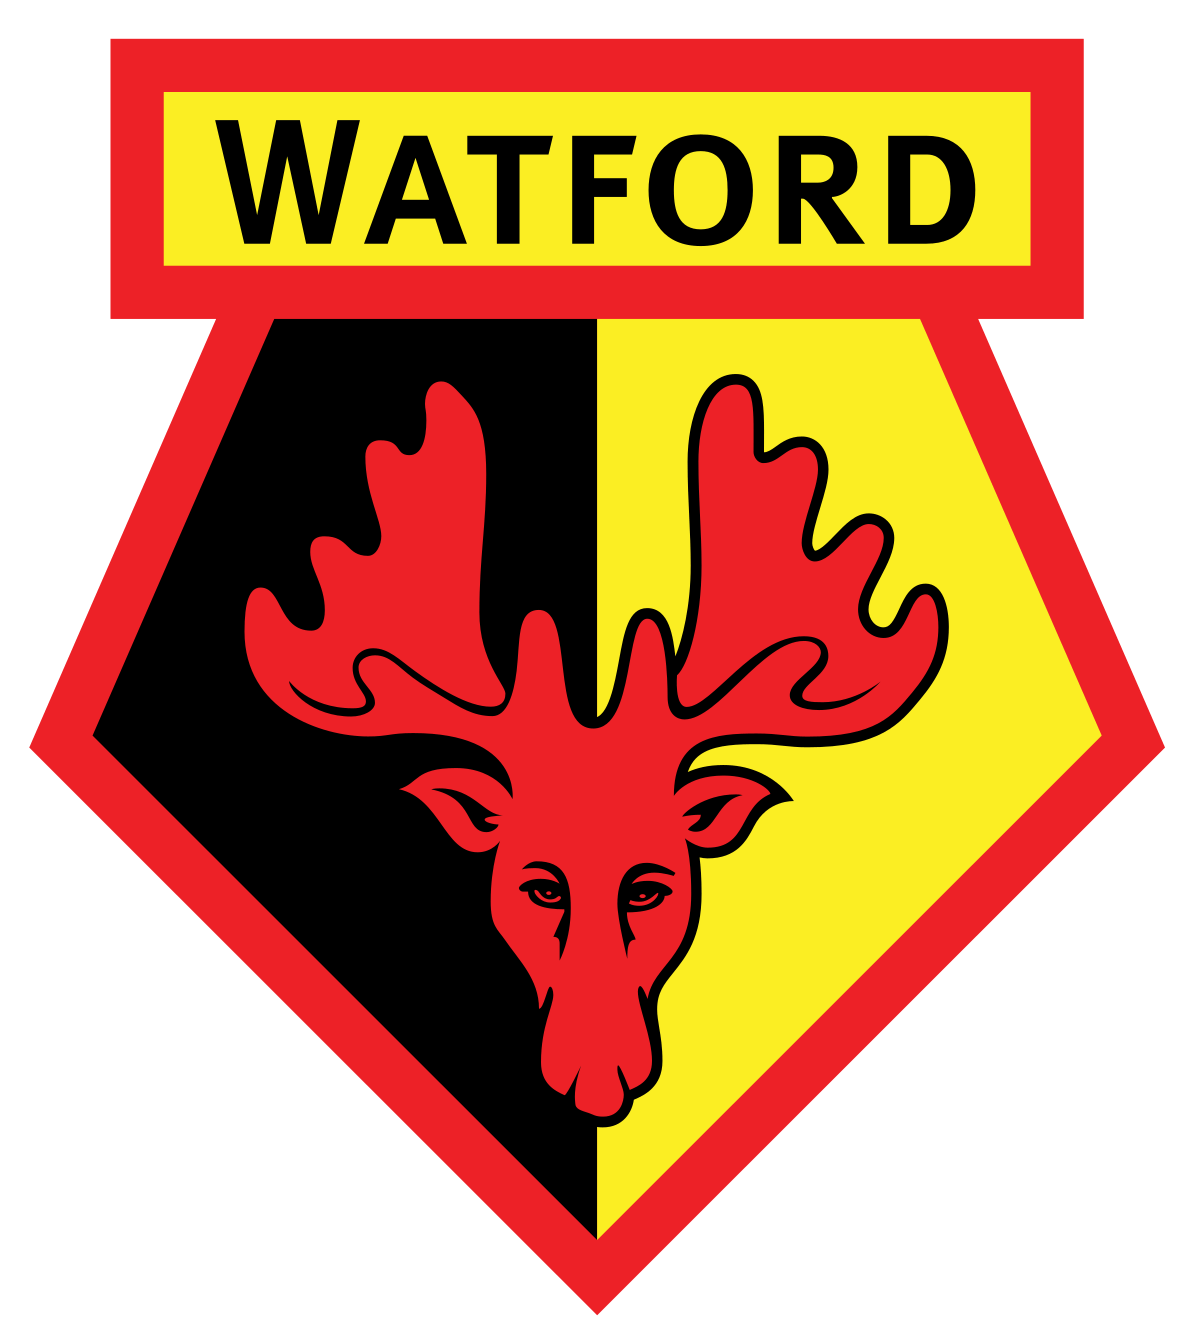 Watford 